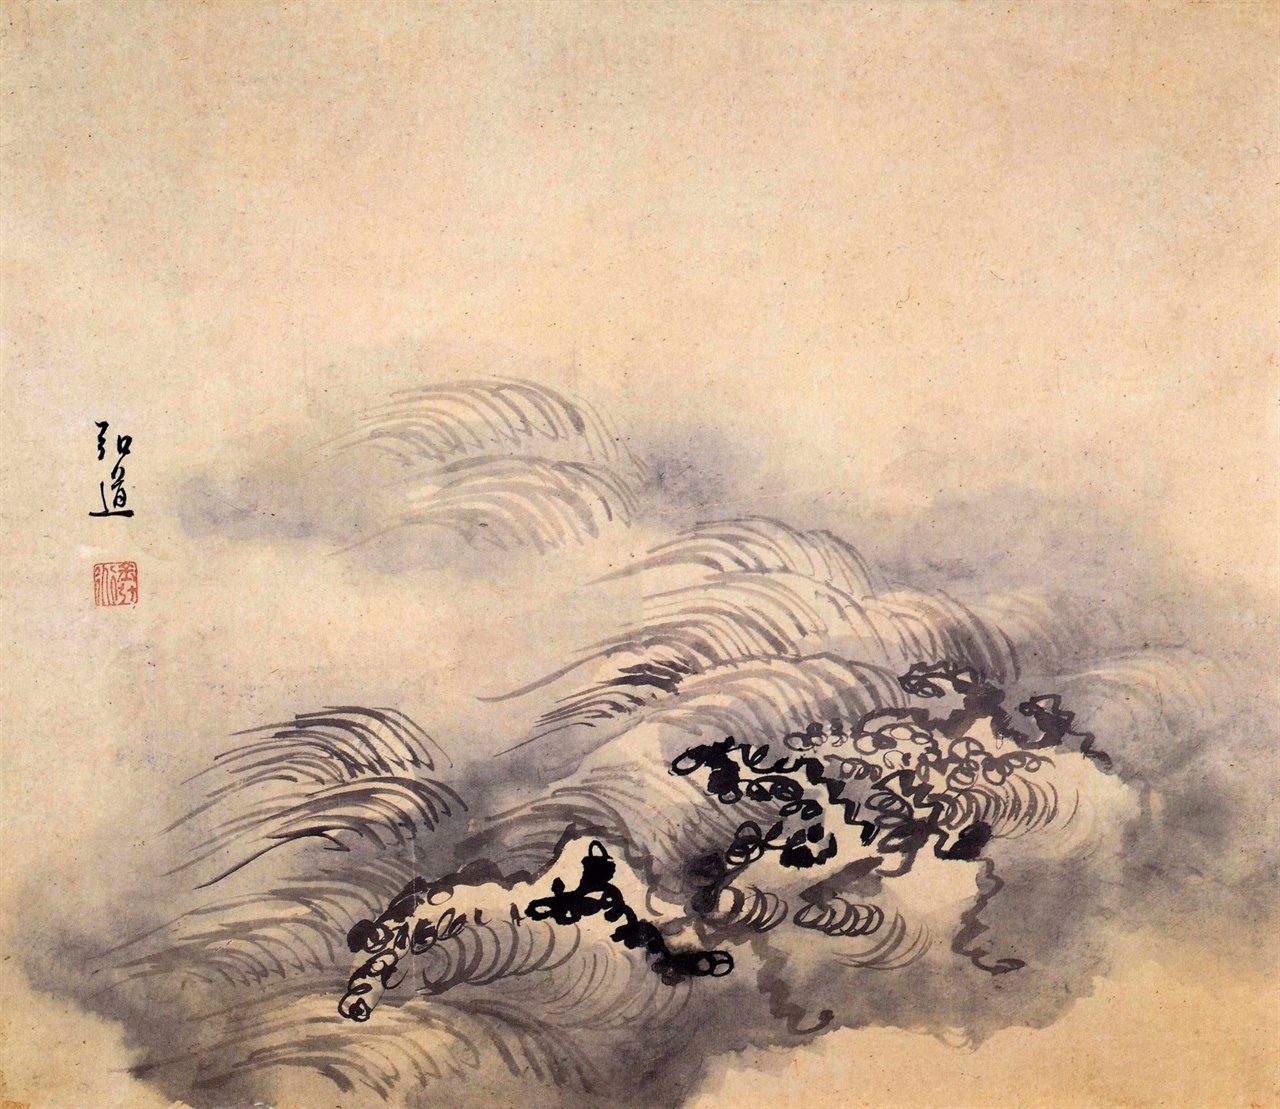 김홍도, 18세기 후반, 종이에 수묵, 41.7x48cm, 간송미술관 소장